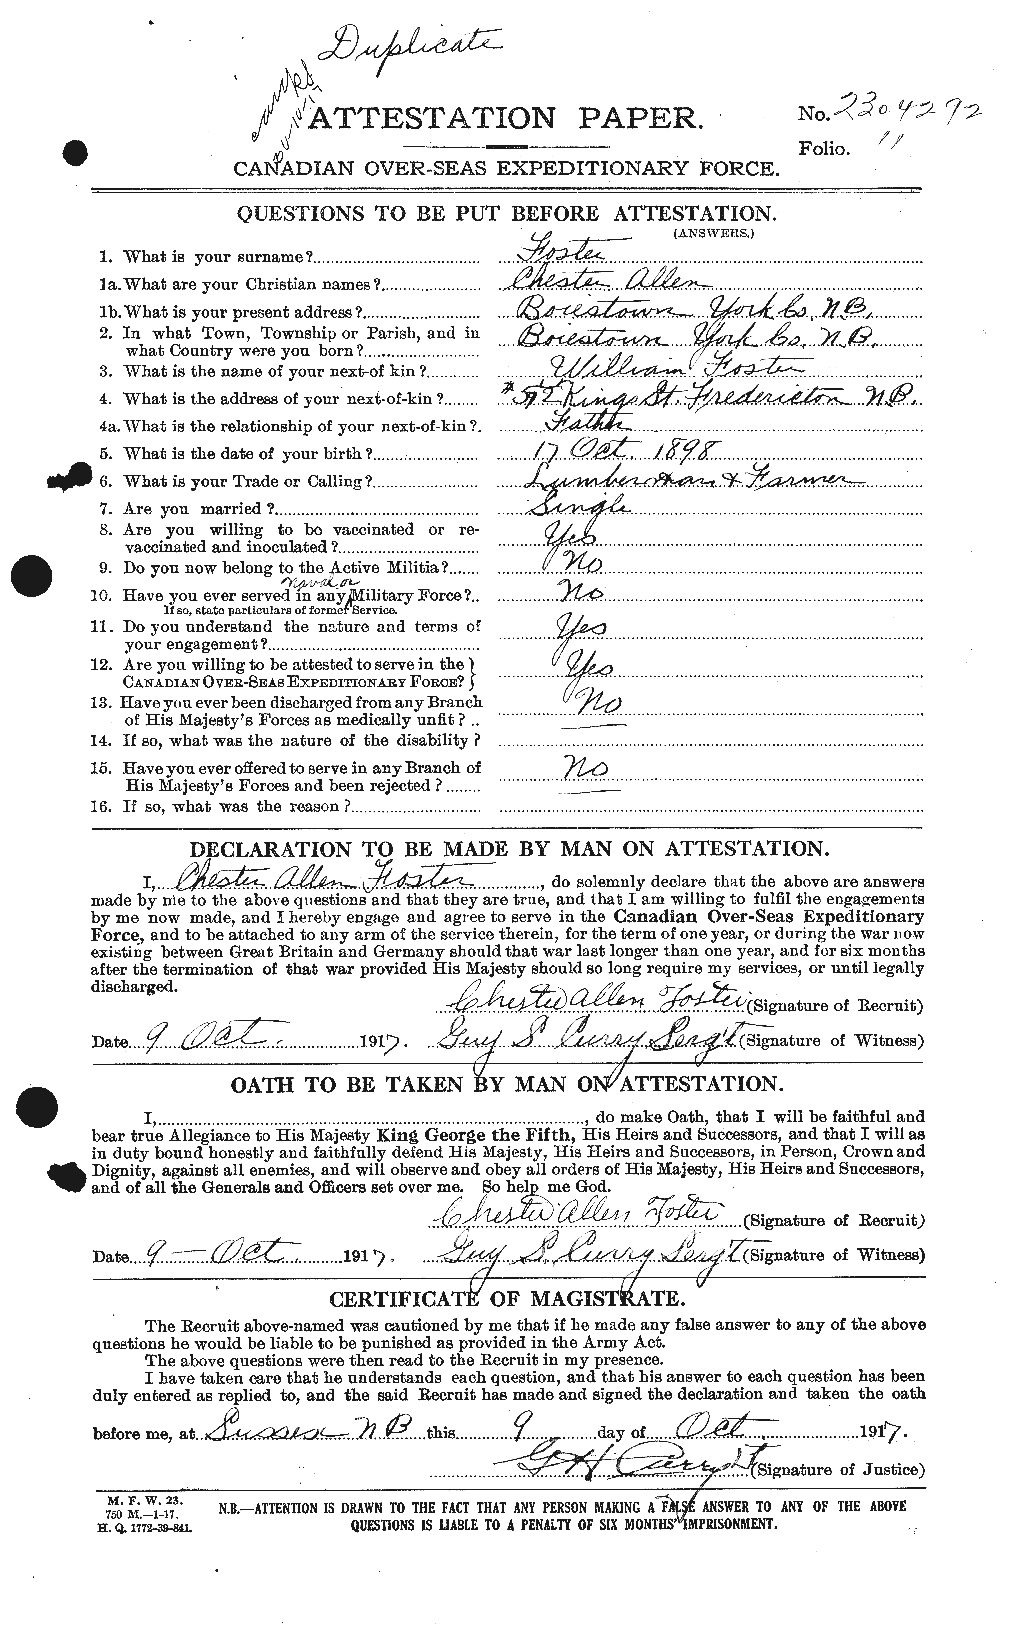 Dossiers du Personnel de la Première Guerre mondiale - CEC 330529a